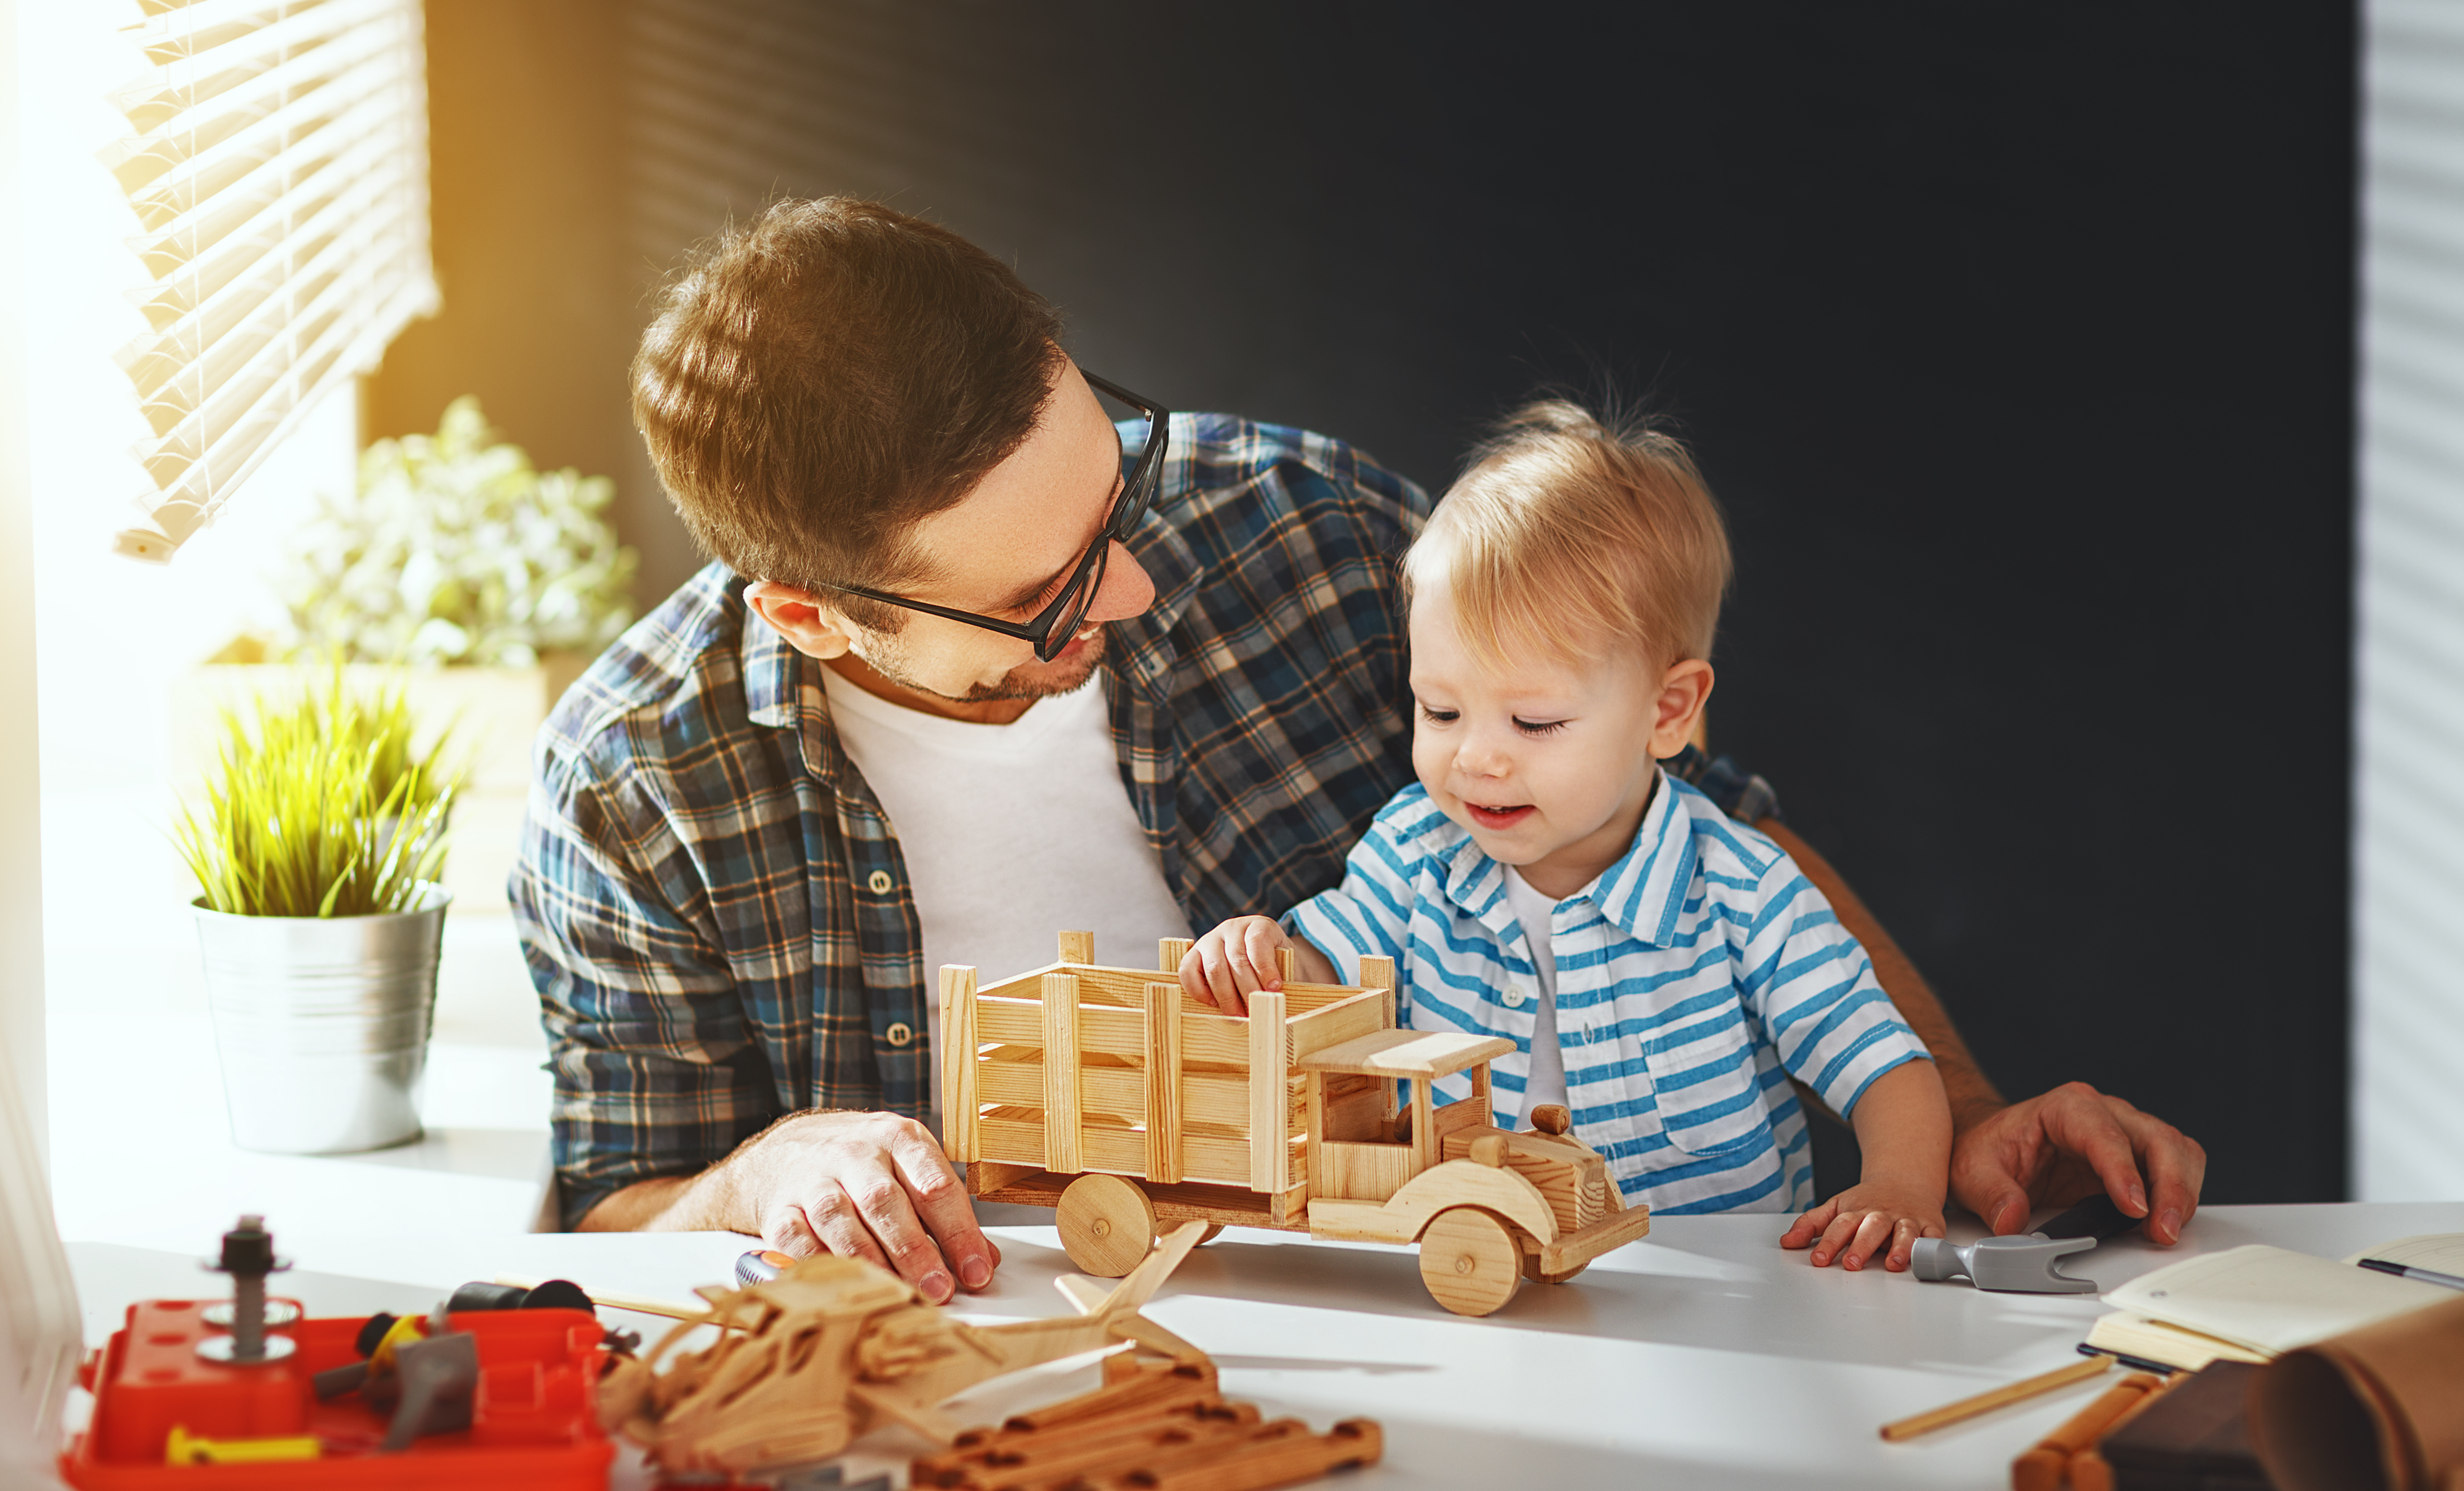 Zgodnie z nowymi przepisami skróci się okresu, w którym będzie możliwe skorzystanie przez pracownika z urlopu ojcowskiego - z 24 do 12 miesięcy od dnia urodzenia dziecka (Fot. Shutterstock)